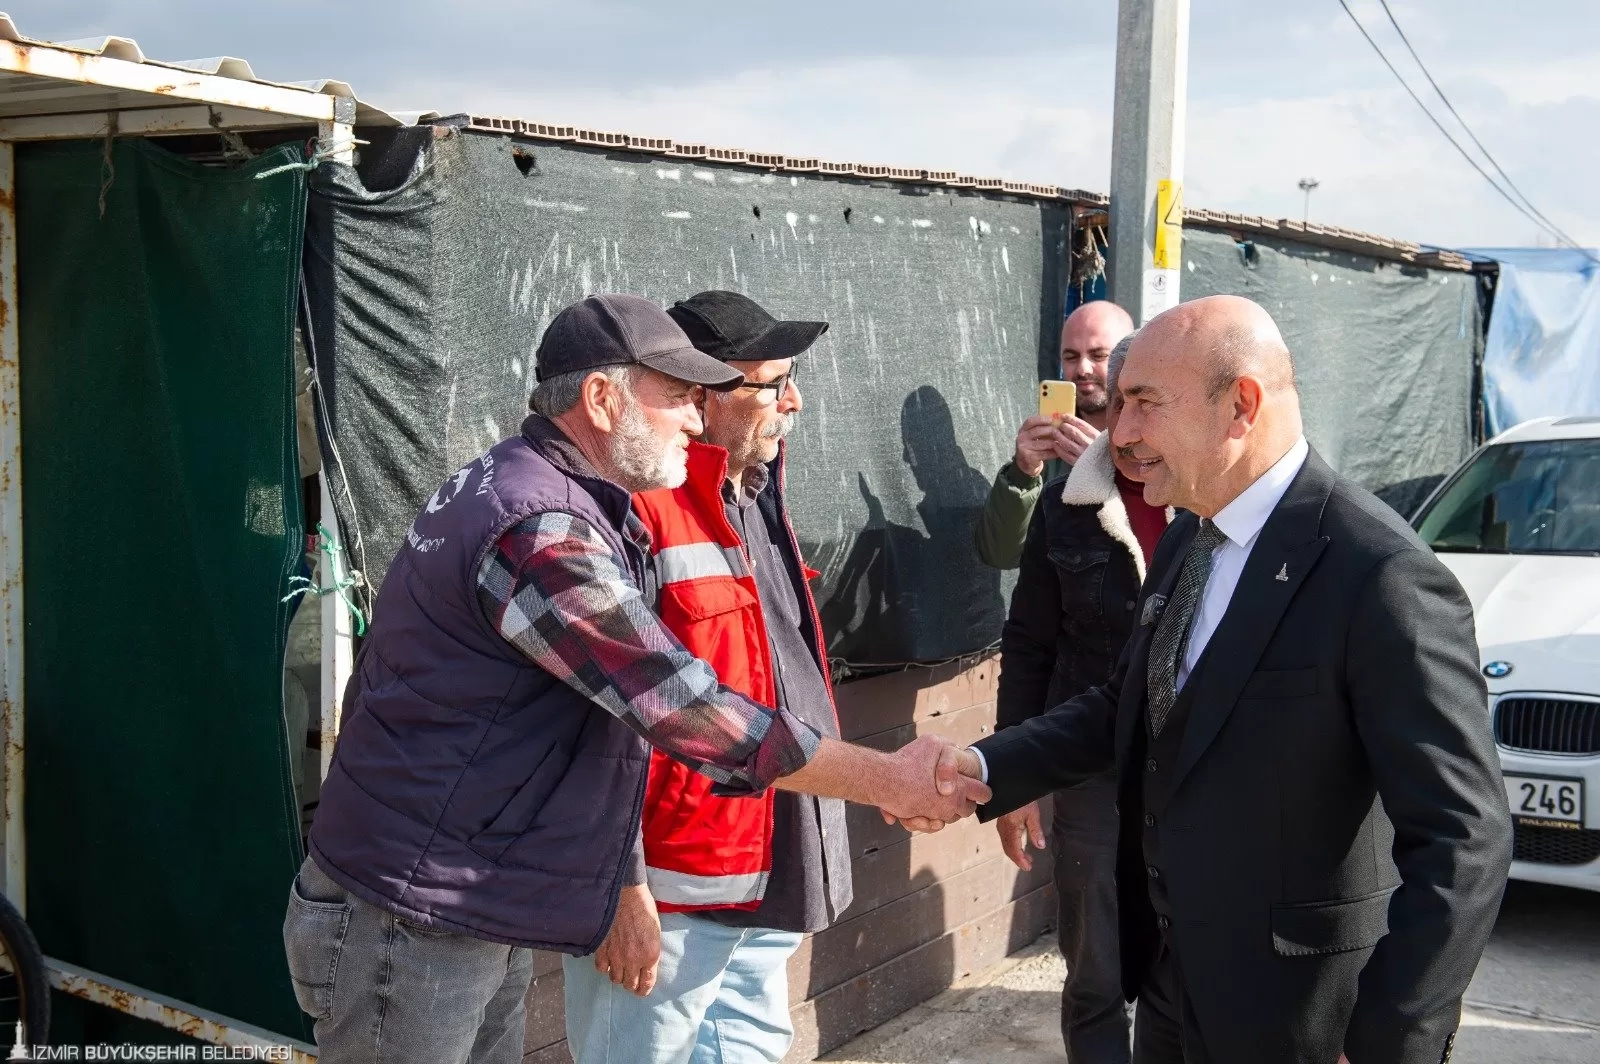 İzmir Büyükşehir Belediye Başkanı Tunç Soyer, geçen ay yaşanan deniz taşmasından etkilenen Karşıyakalı balıkçıları ziyaret etti. 